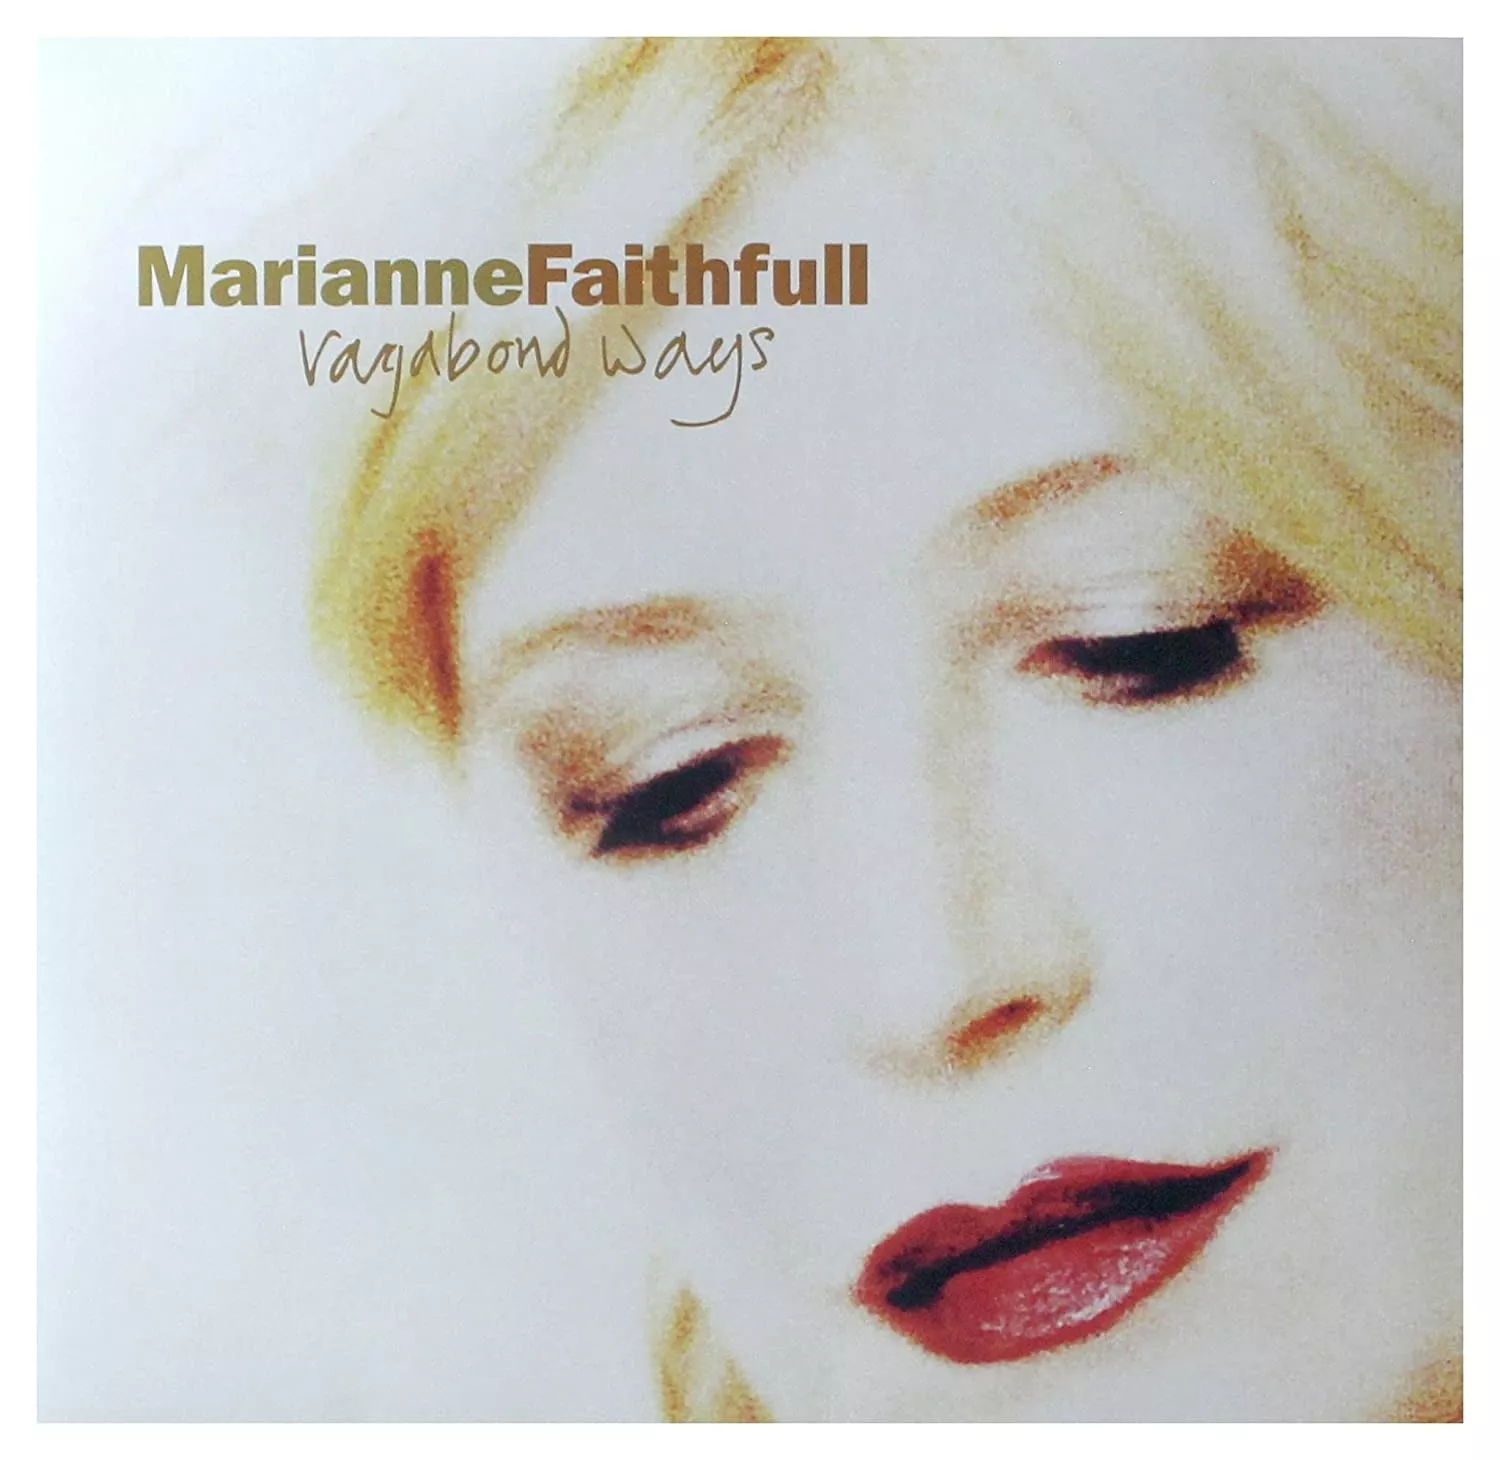 Vagabond Ways (Deluxe Edition) - Marianne Faithfull